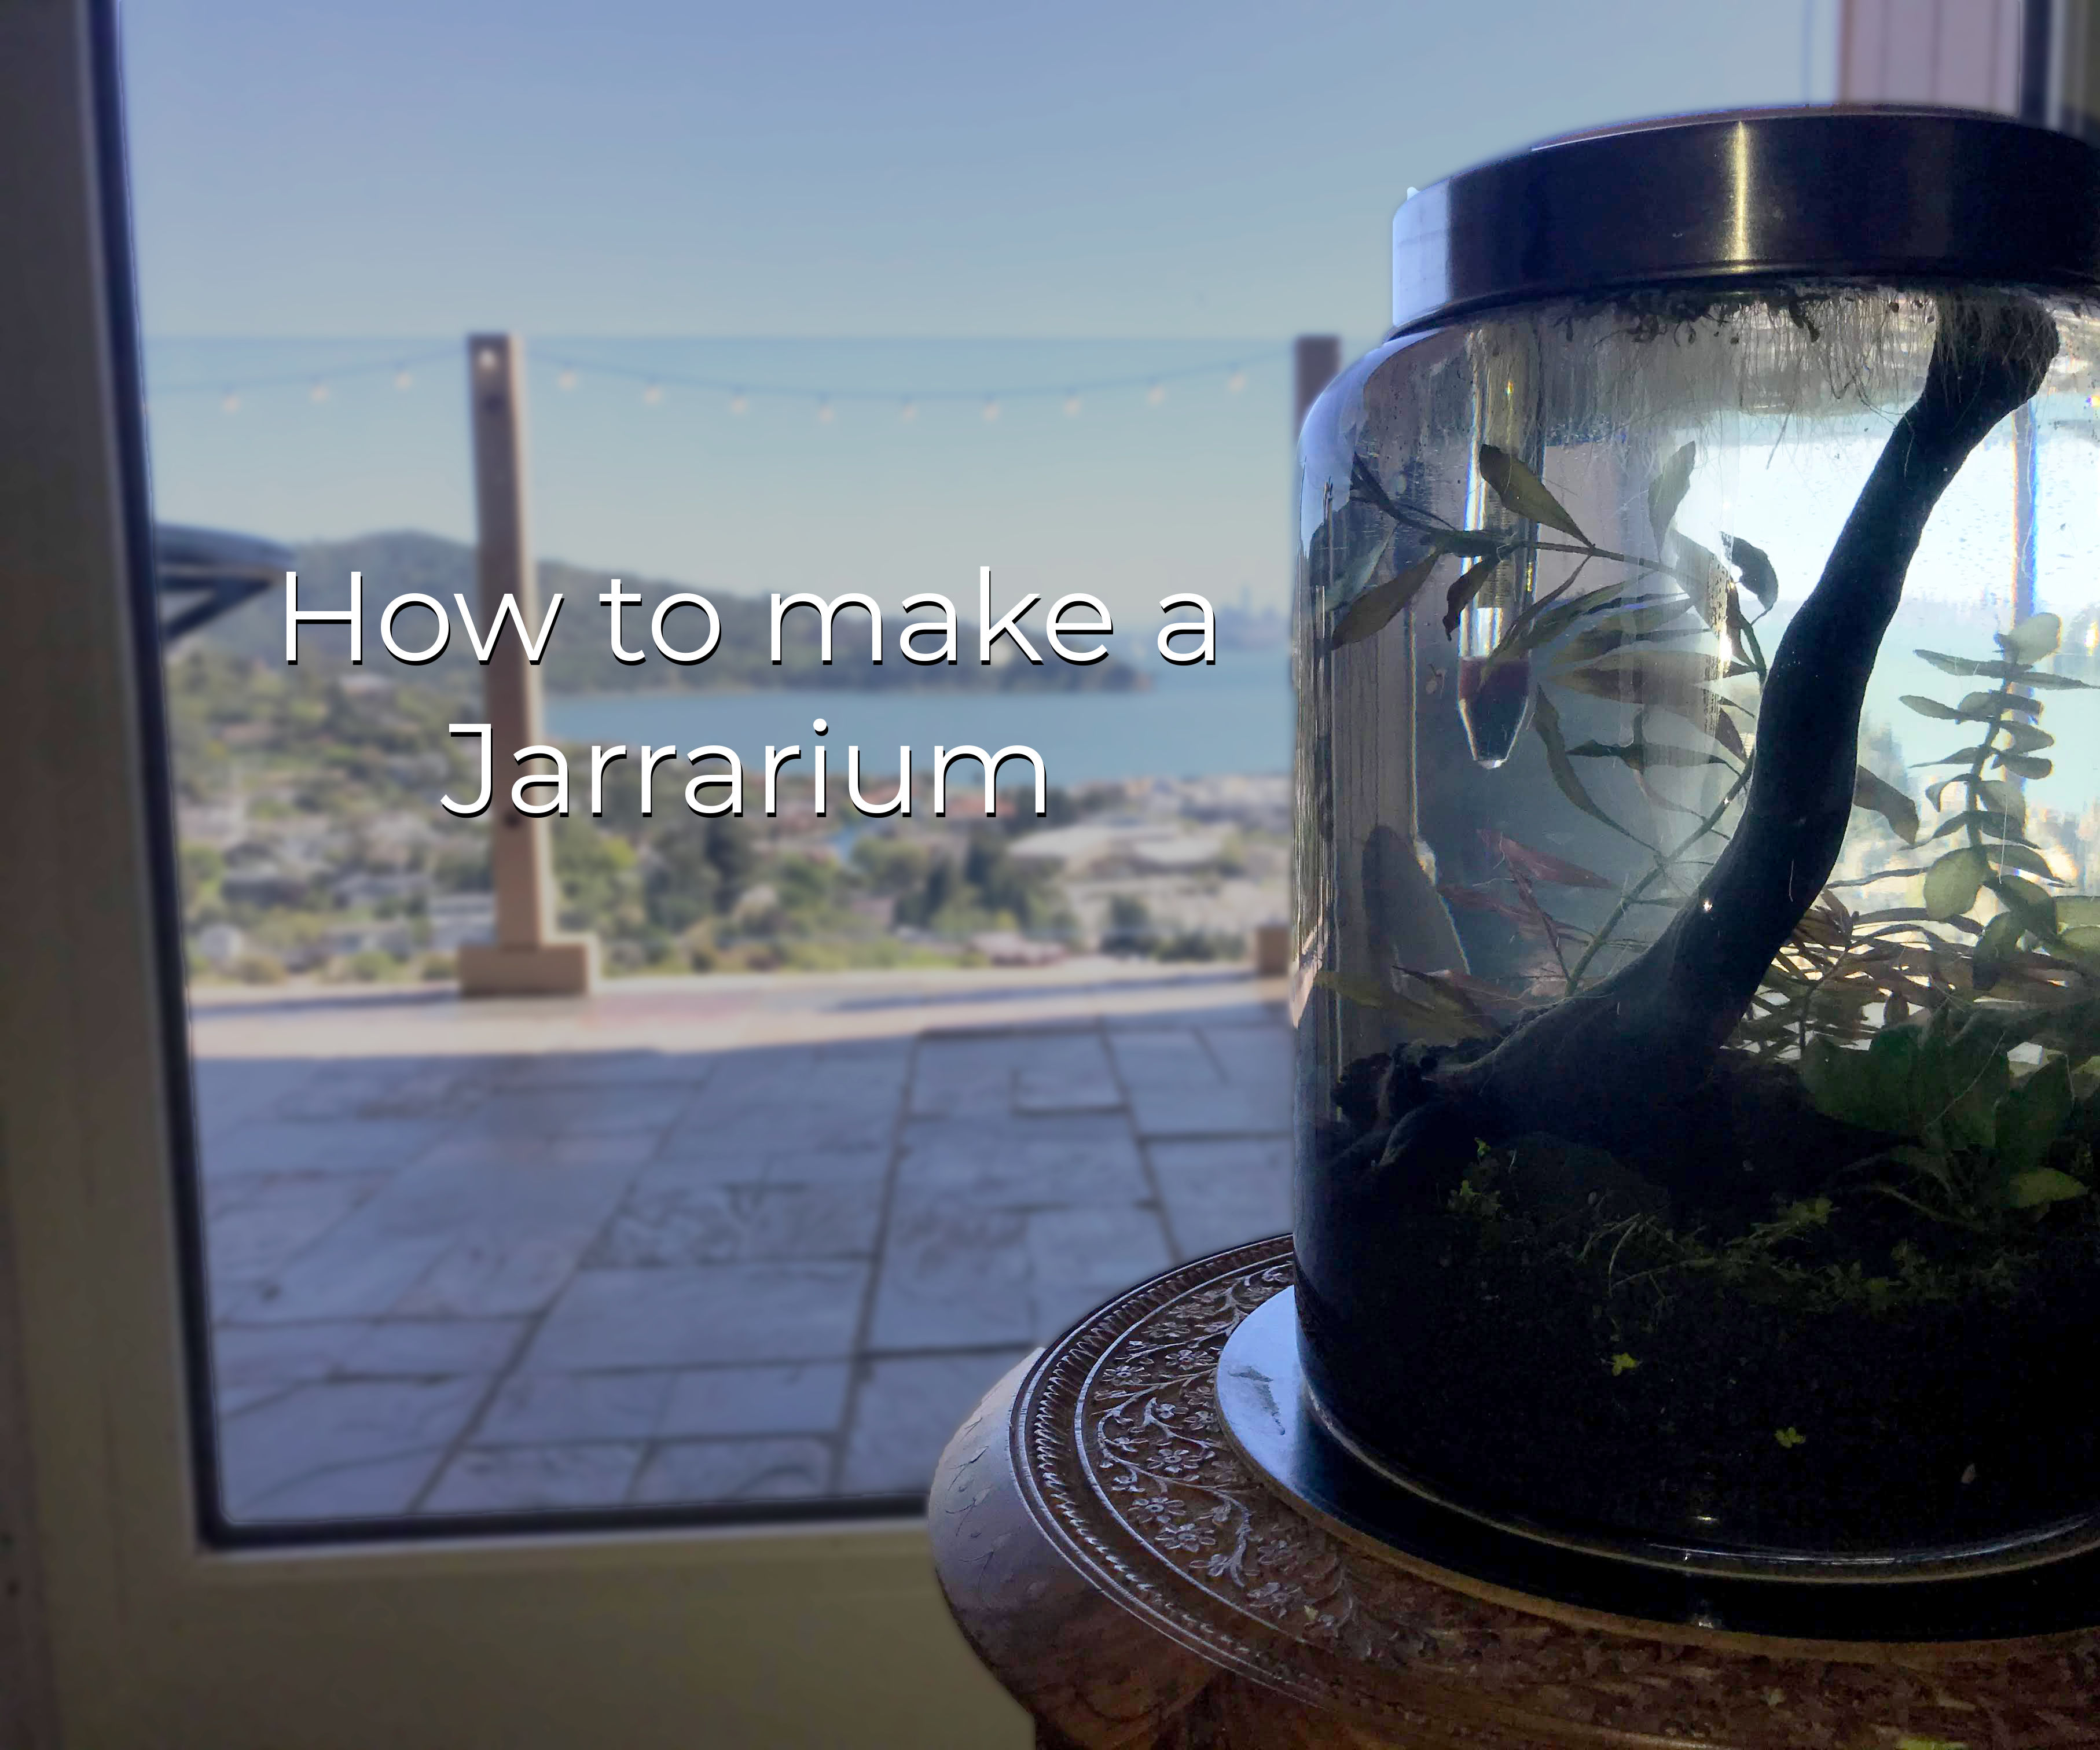 How to Make a Jarrarium